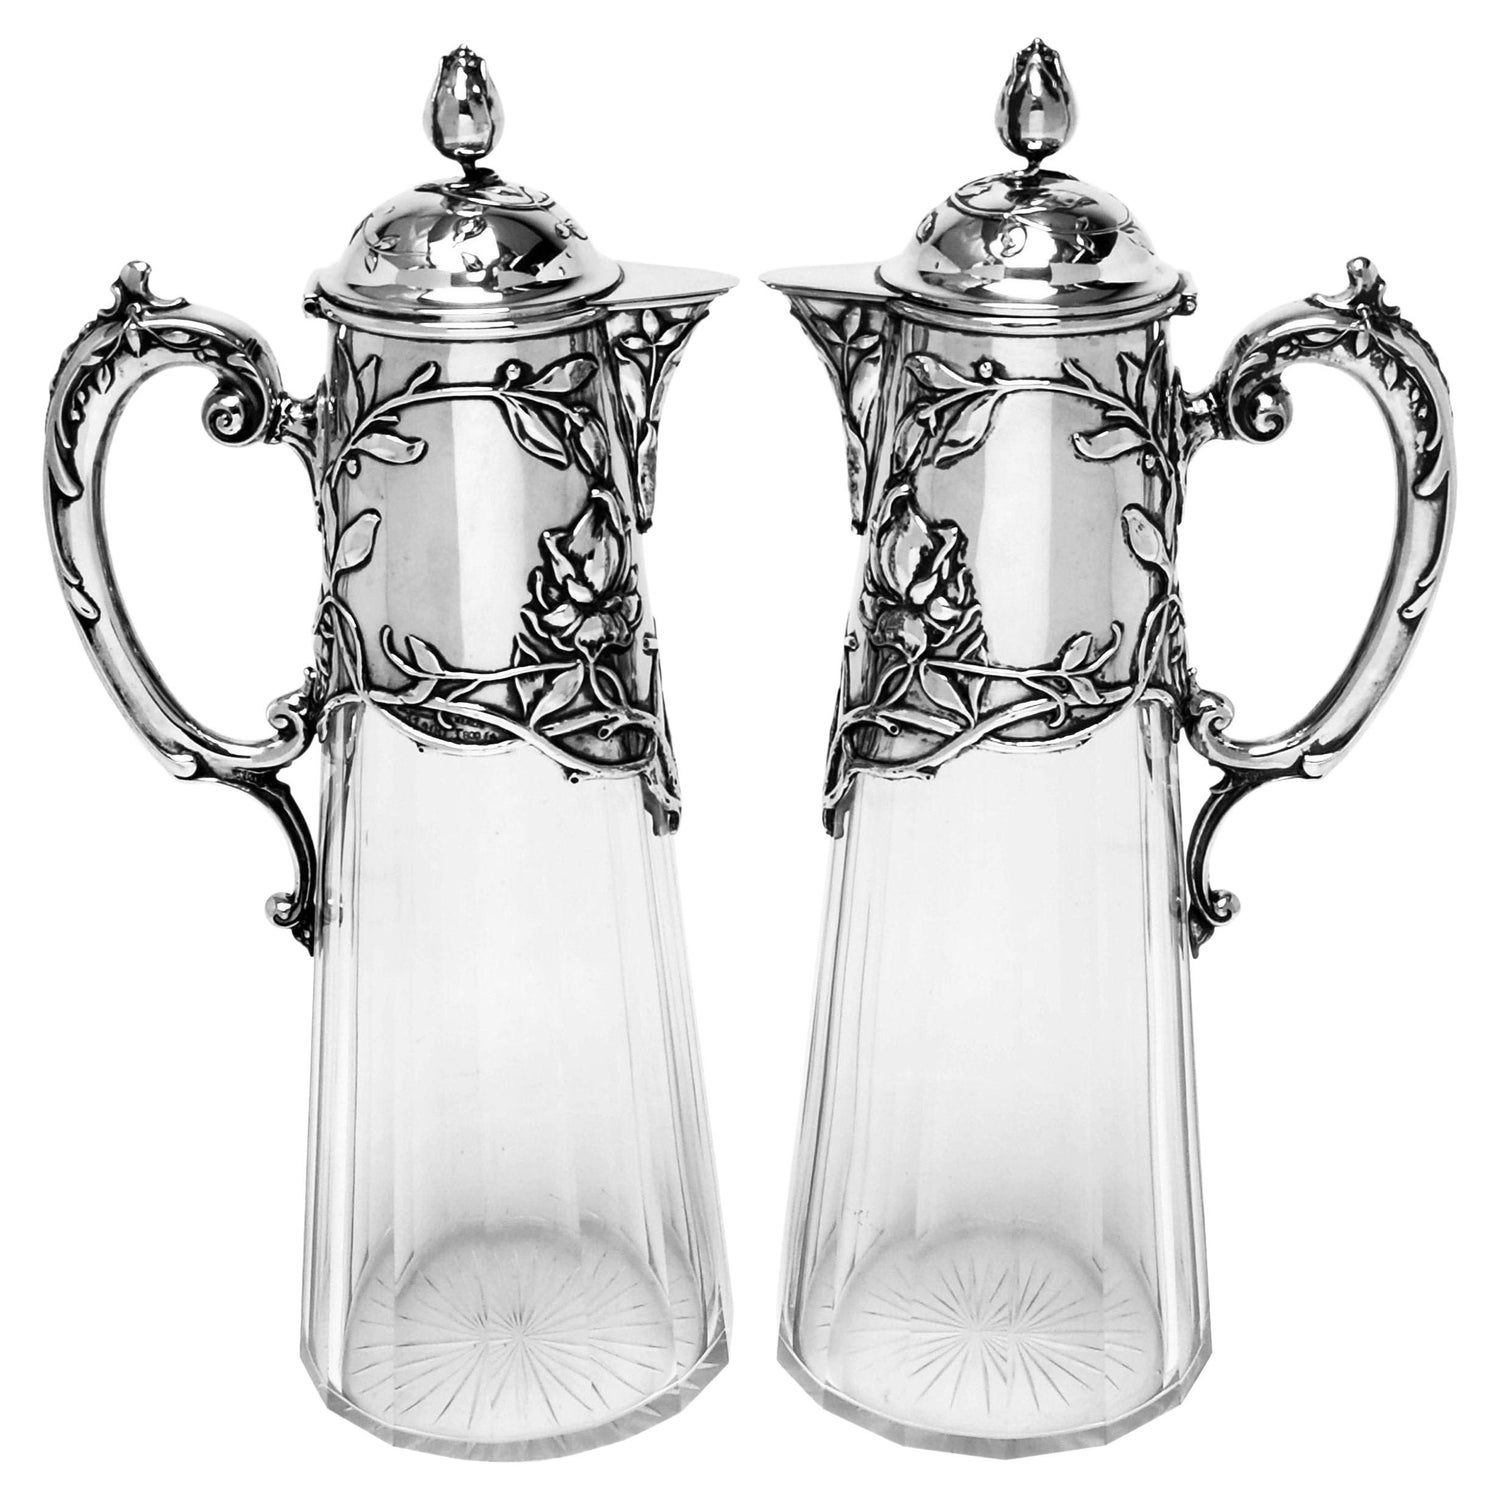 Pair Antique Art Nouveau Silver & Glass Claret Jugs circa 1900 German Jugendstil